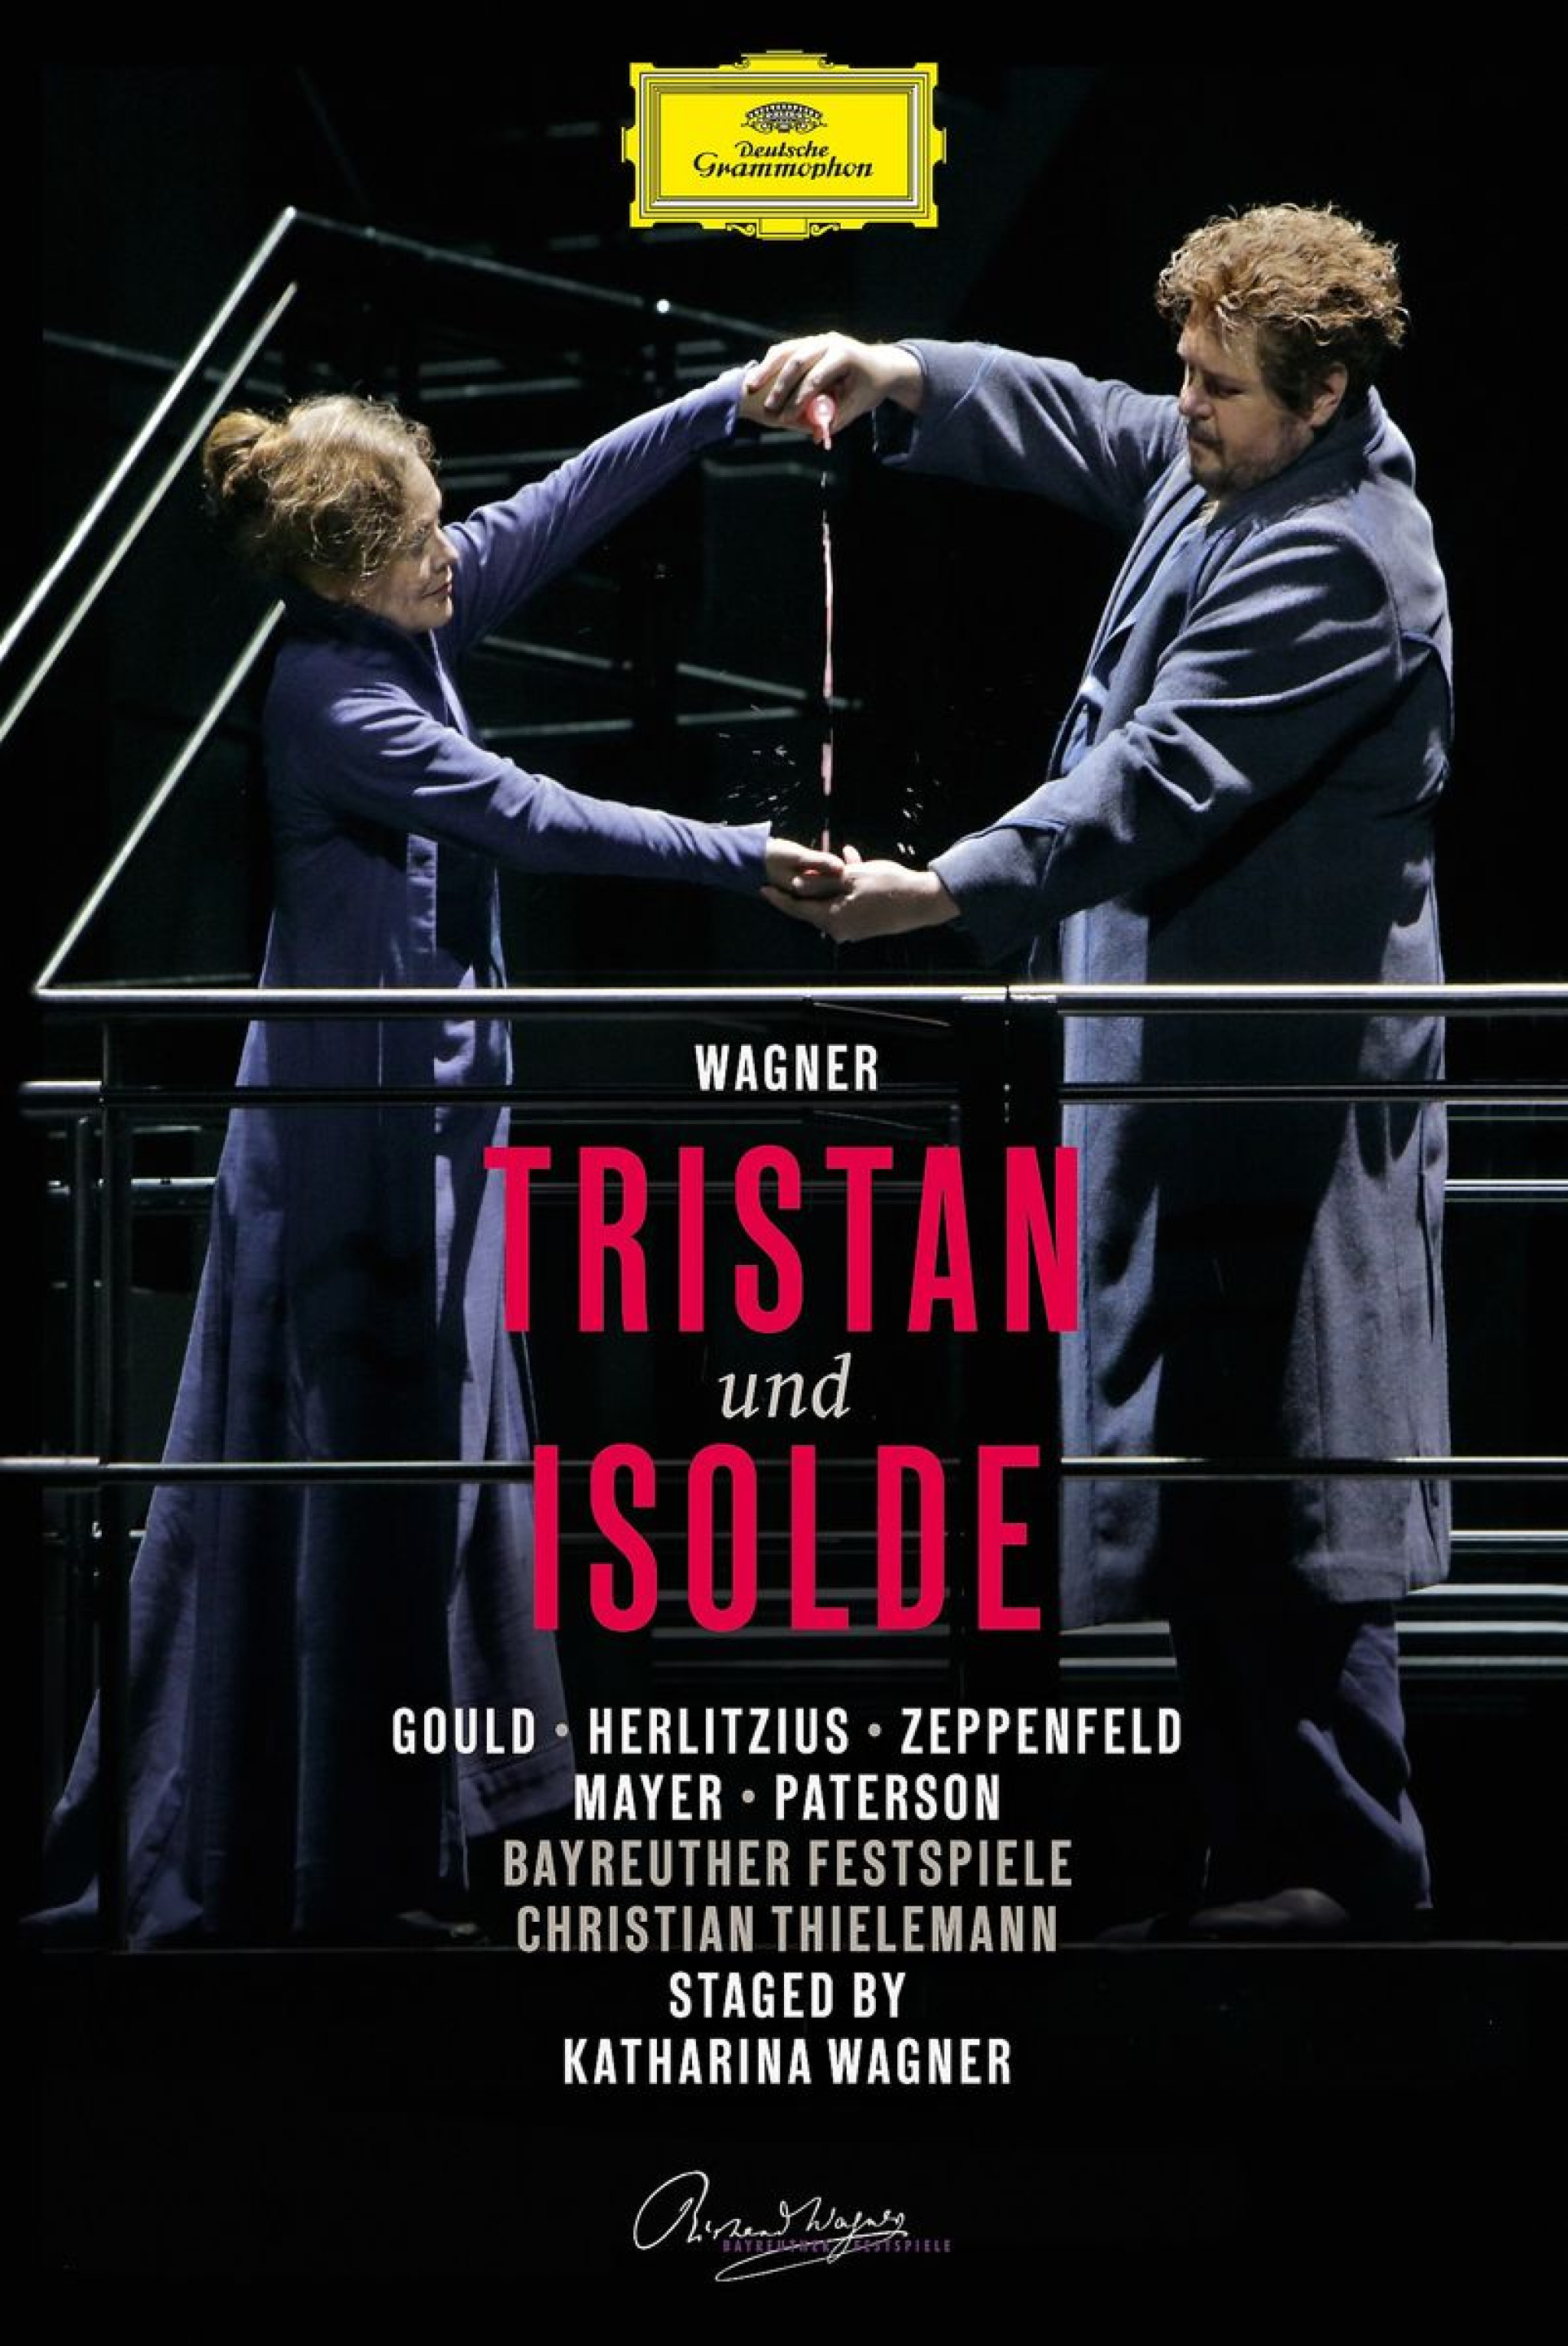 WAGNER: Tristan und Isolde